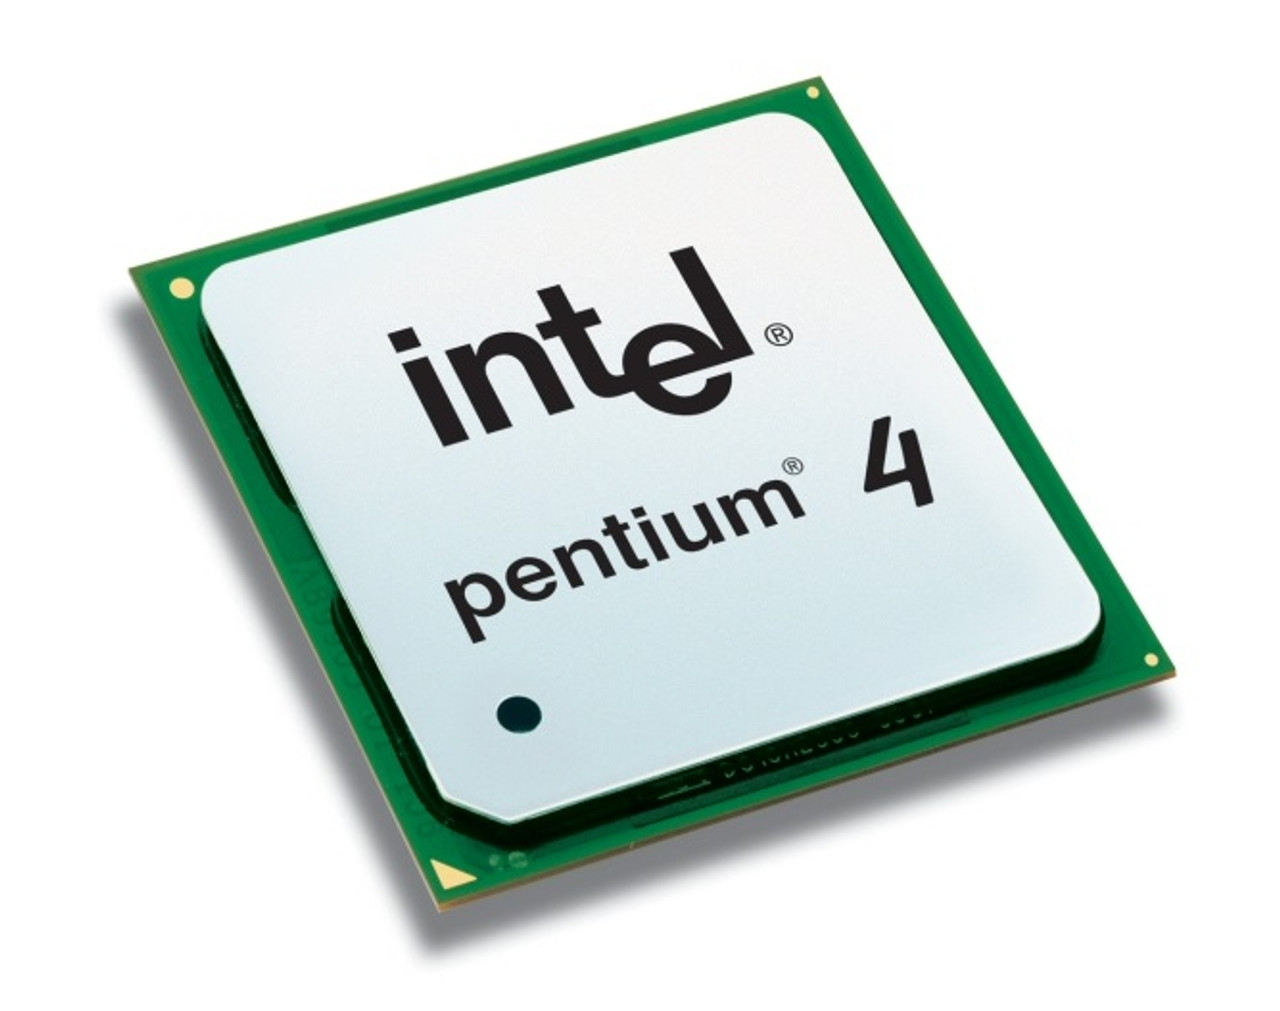 5J357 - Dell 1.70GHz 400MHz FSB 512KB L2 Cache Intel Pentium 4 Mobile Processor for Inspiron 2650